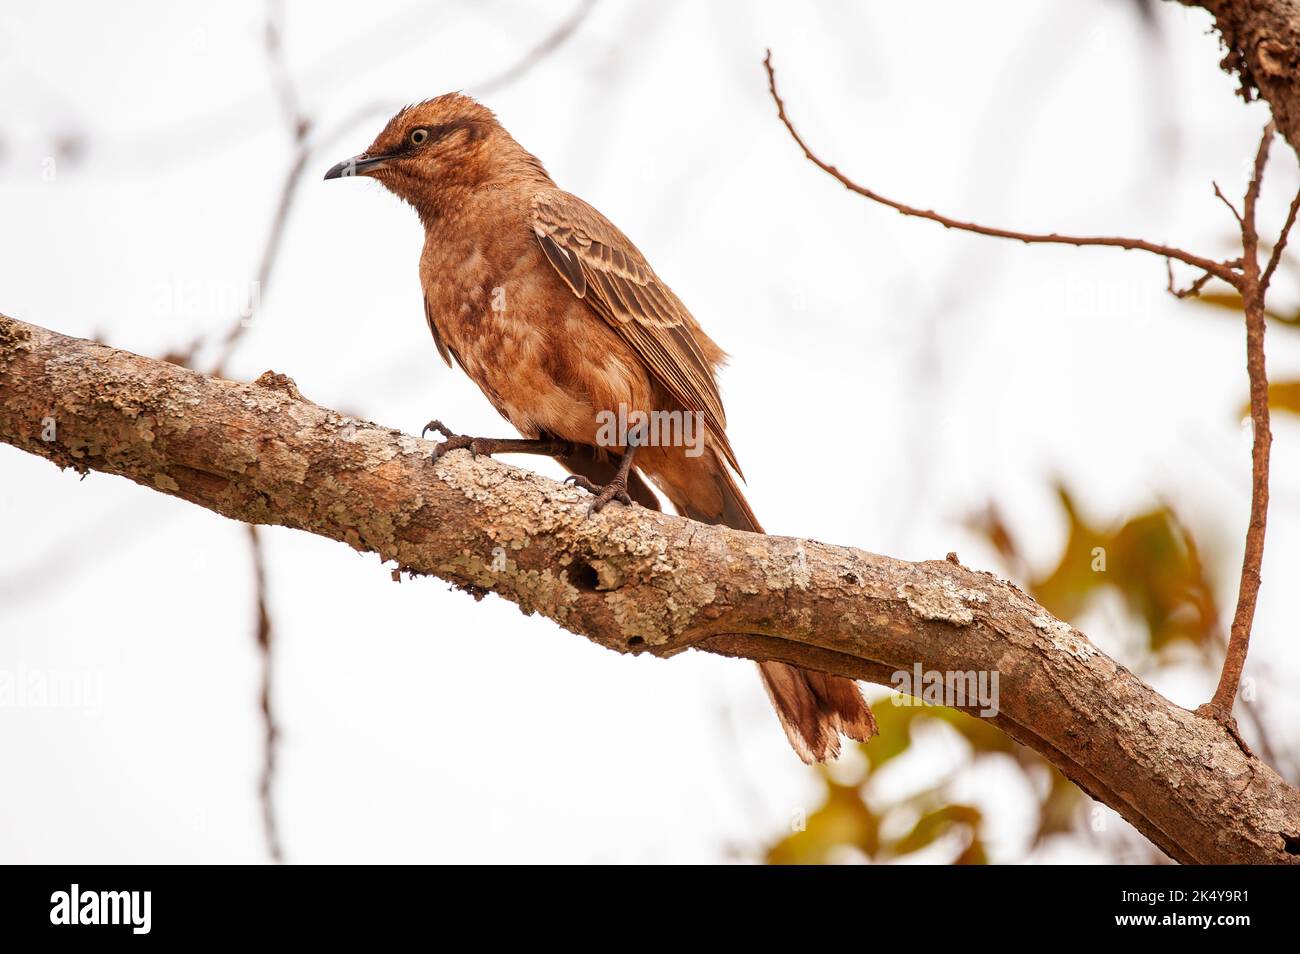 sabiá-do-campo o Mockingbird (Mimus saturninus) è un uccello della famiglia dei Passeriformes ordem e dei Mimidae, della Serra da Canastra, Minas Gerais, Brasile Foto Stock